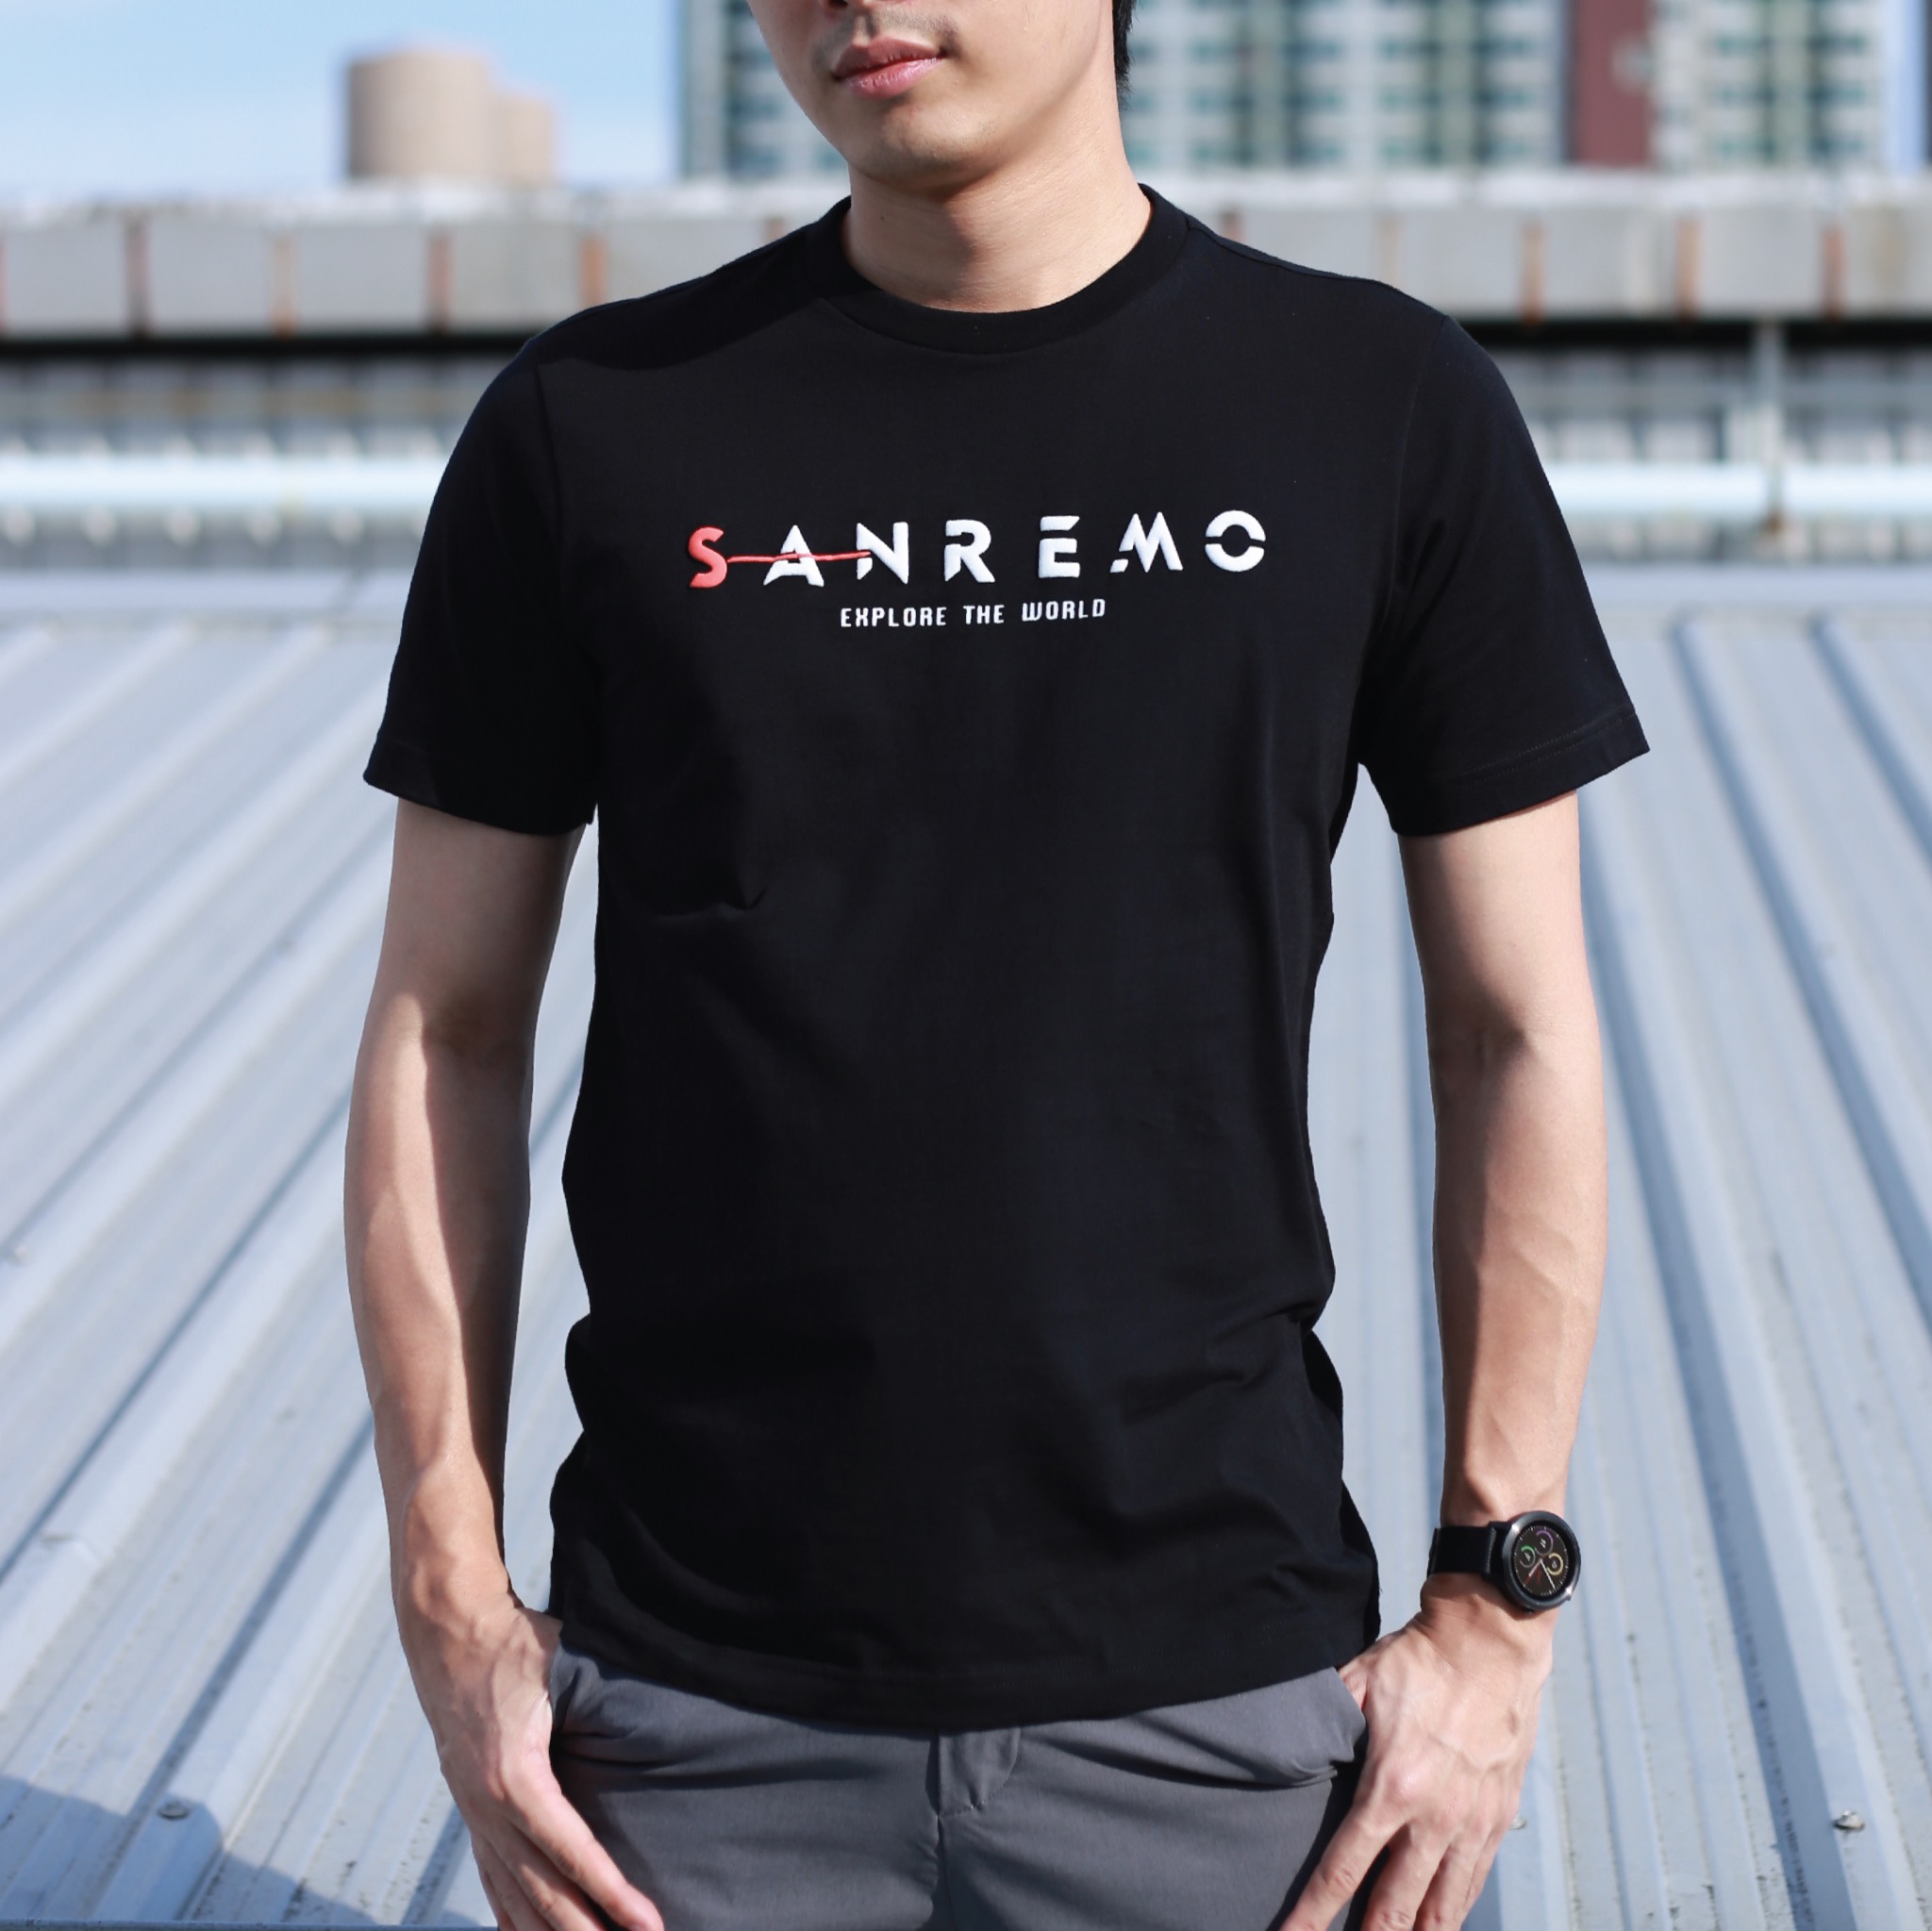 เสื้อยืดคอกลมสีดำ สกรีนลาย "SanRemo explore the world" รหัส SCTK2